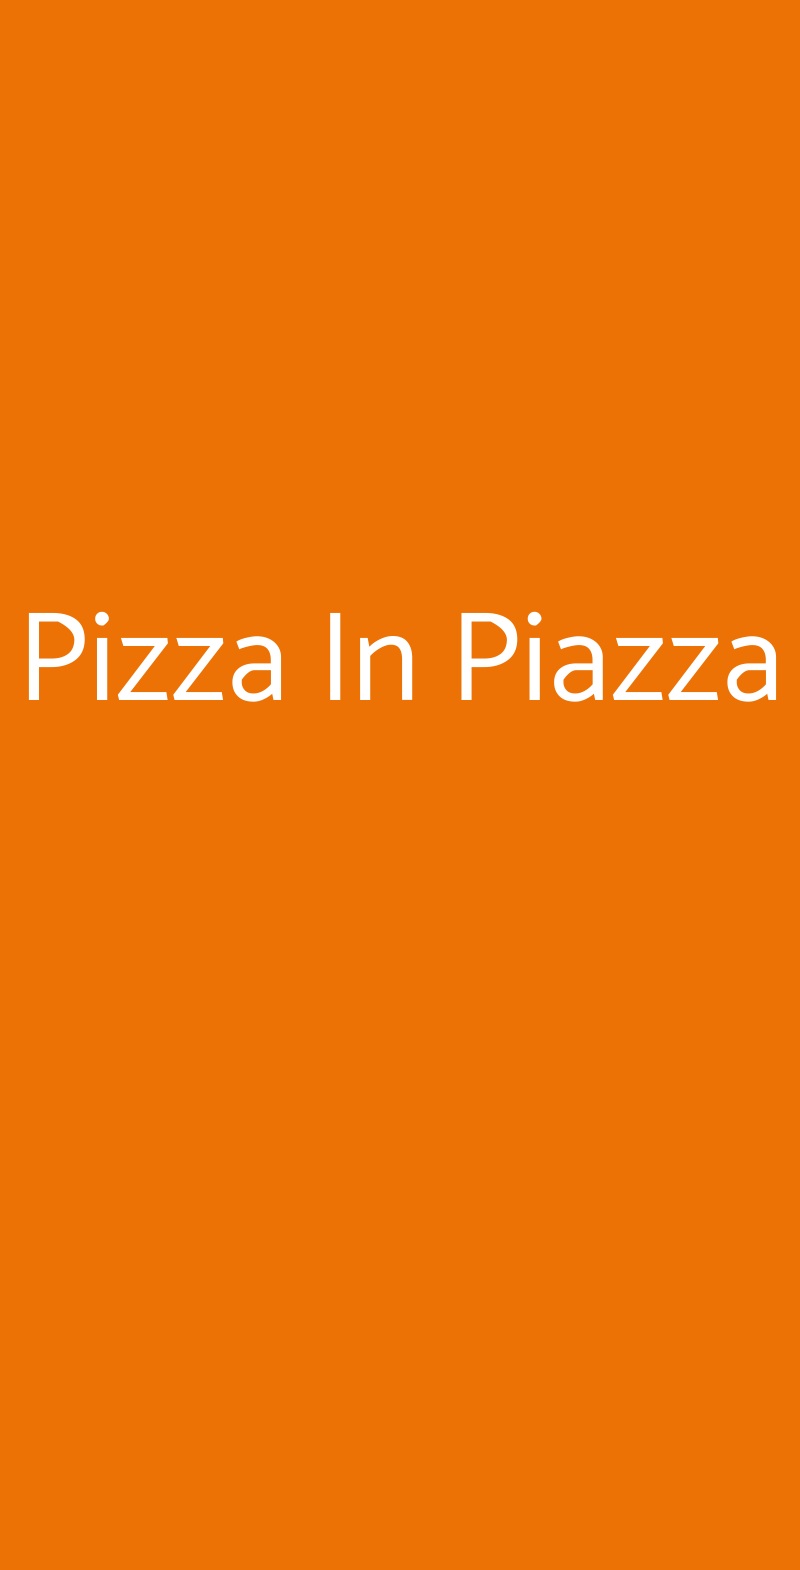 Pizza In Piazza Milano menù 1 pagina